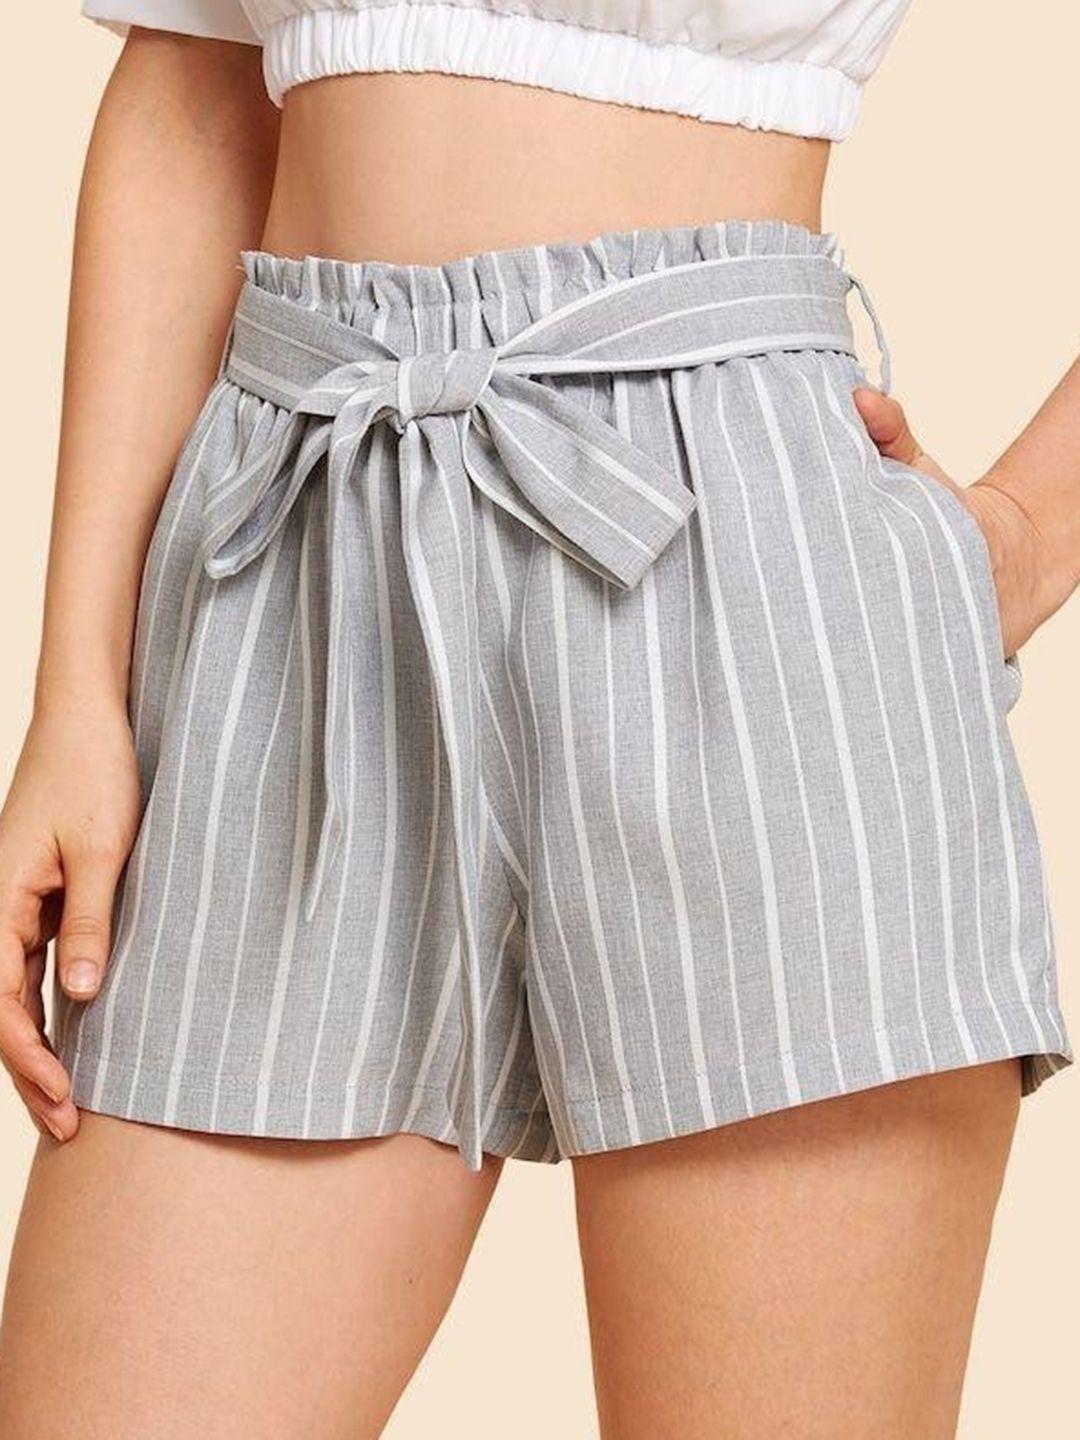 la aimee women striped shorts